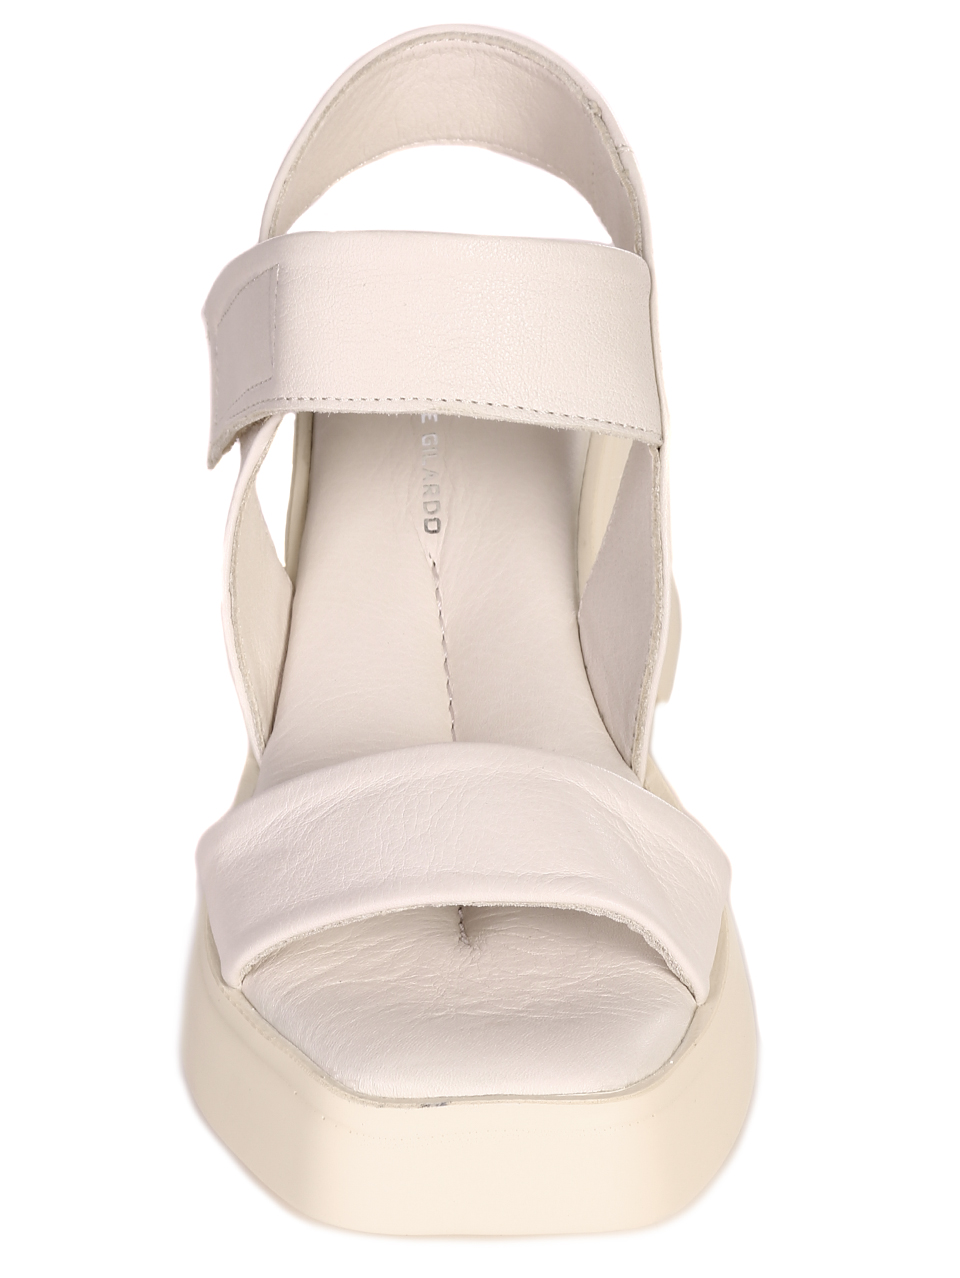 Ежедневни дамски сандали на платформа от естествена кожа 4AT-23285 beige